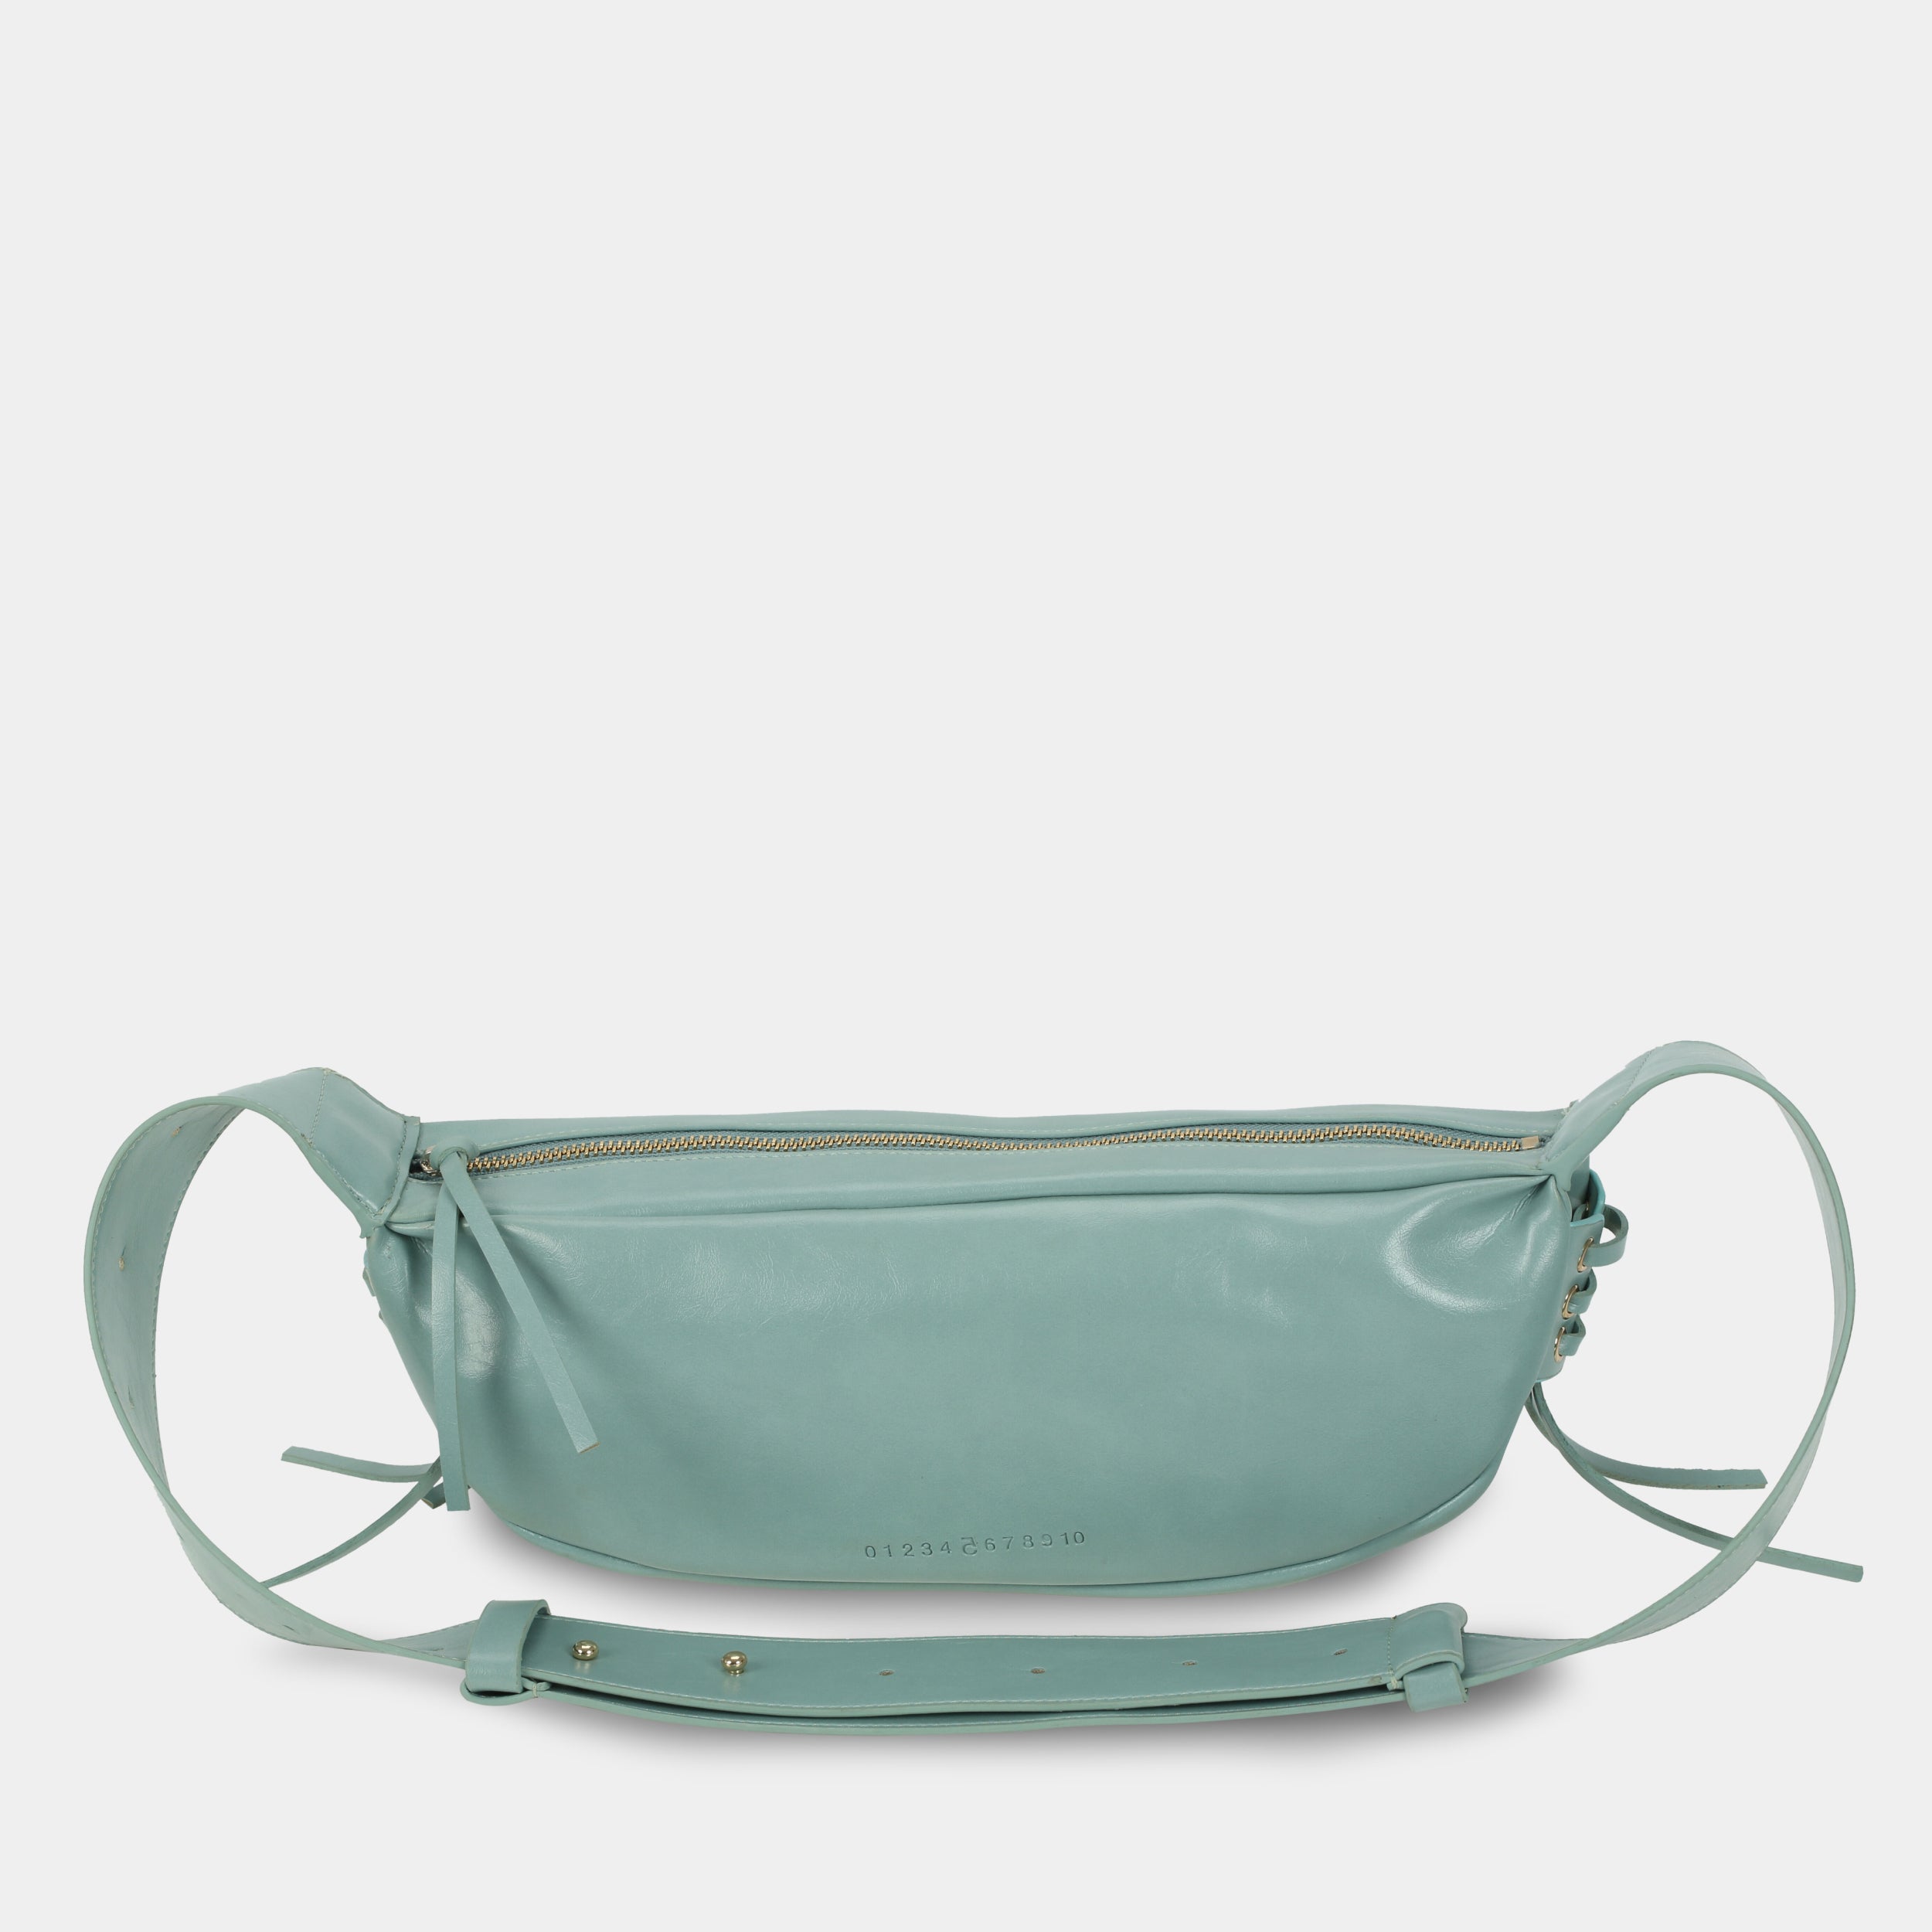 Túi xách LACE size lớn (M) màu xanh ngọc pastel